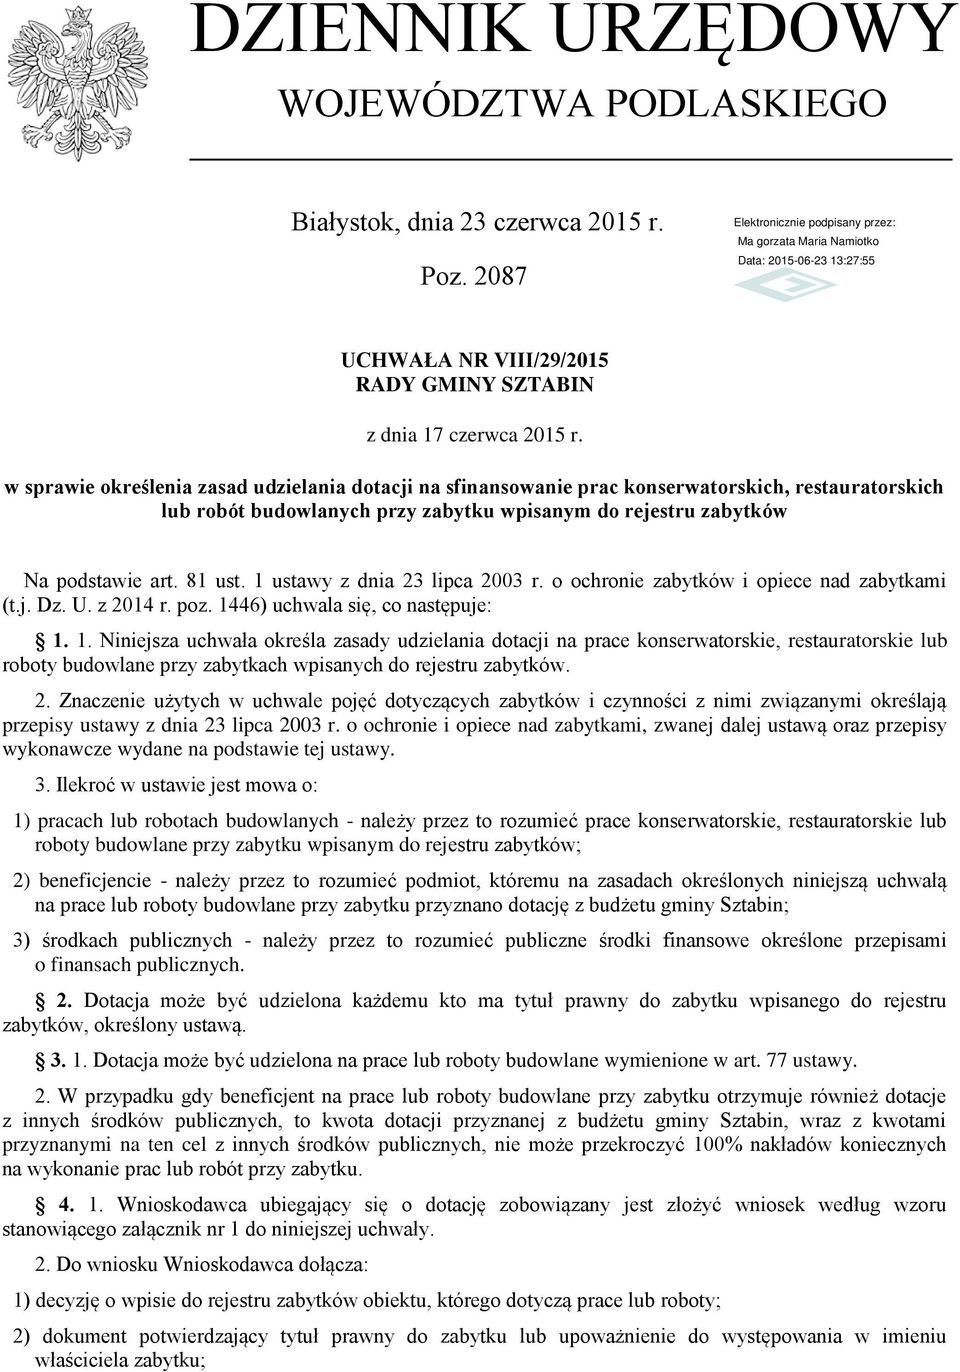 1 ustawy z dnia 23 lipca 2003 r. o ochronie zabytków i opiece nad zabytkami (t.j. Dz. U. z 2014 r. poz. 14